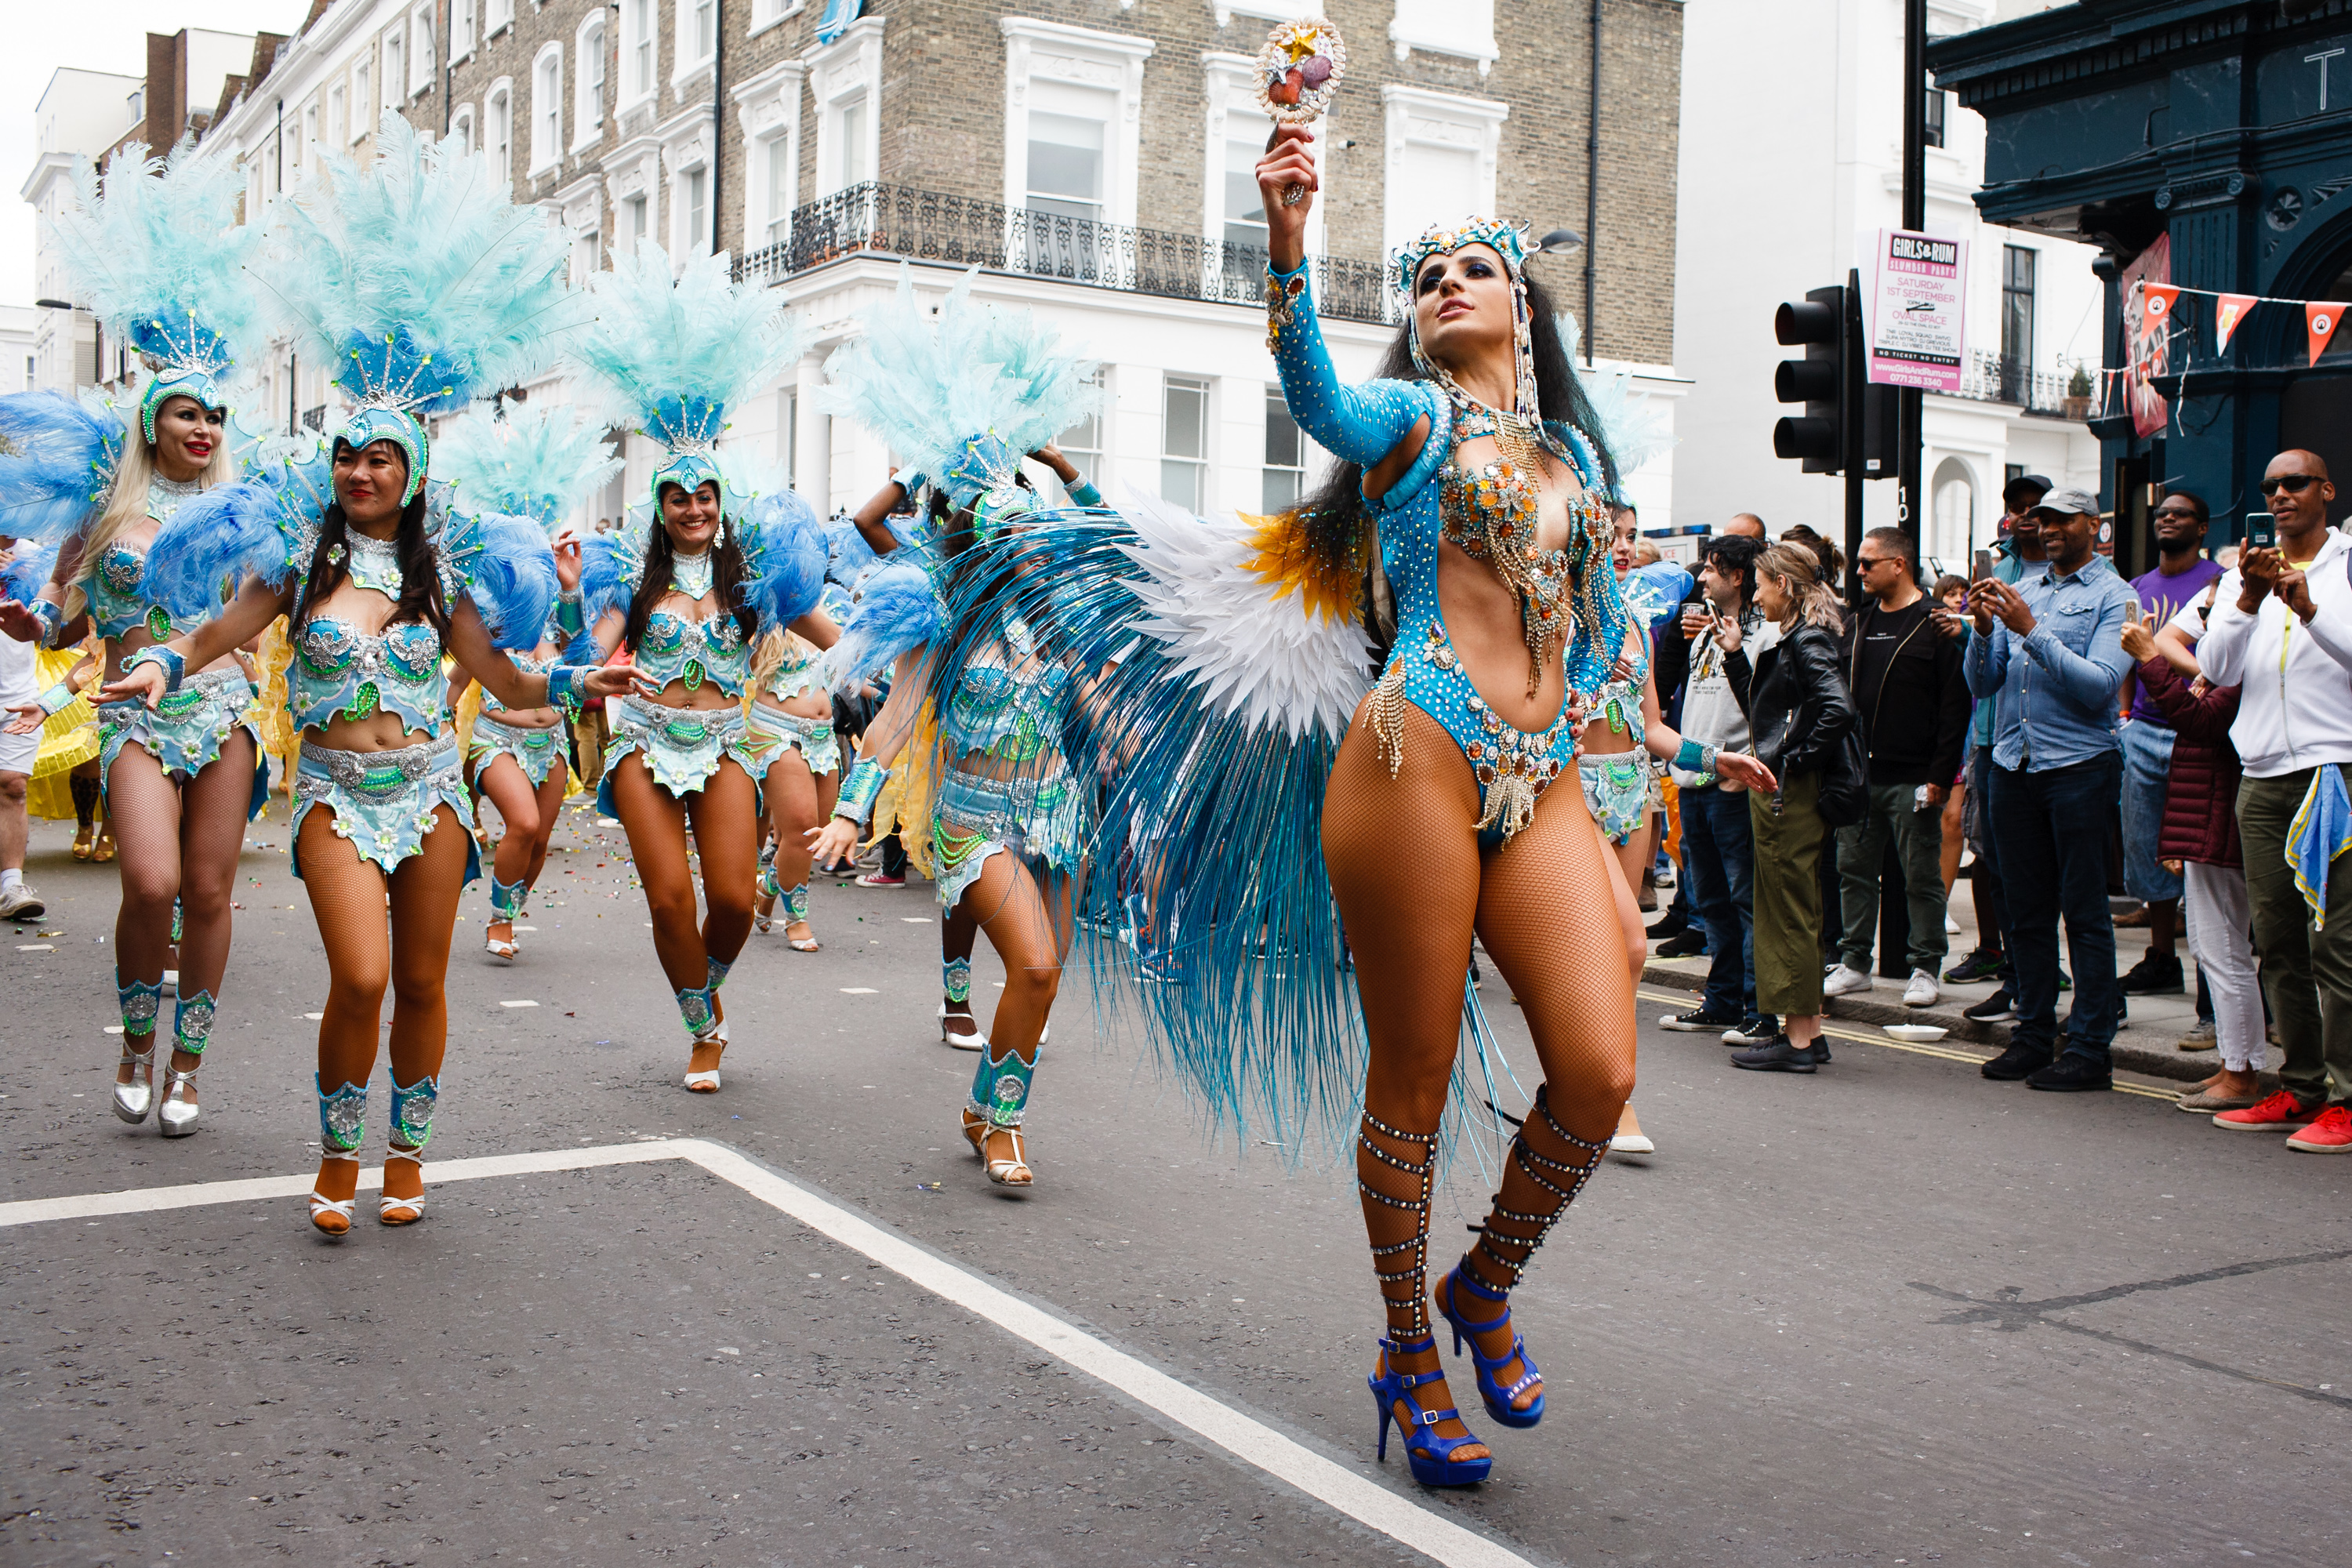 395 embert tartóztattak le a Notting Hill-i karneválon